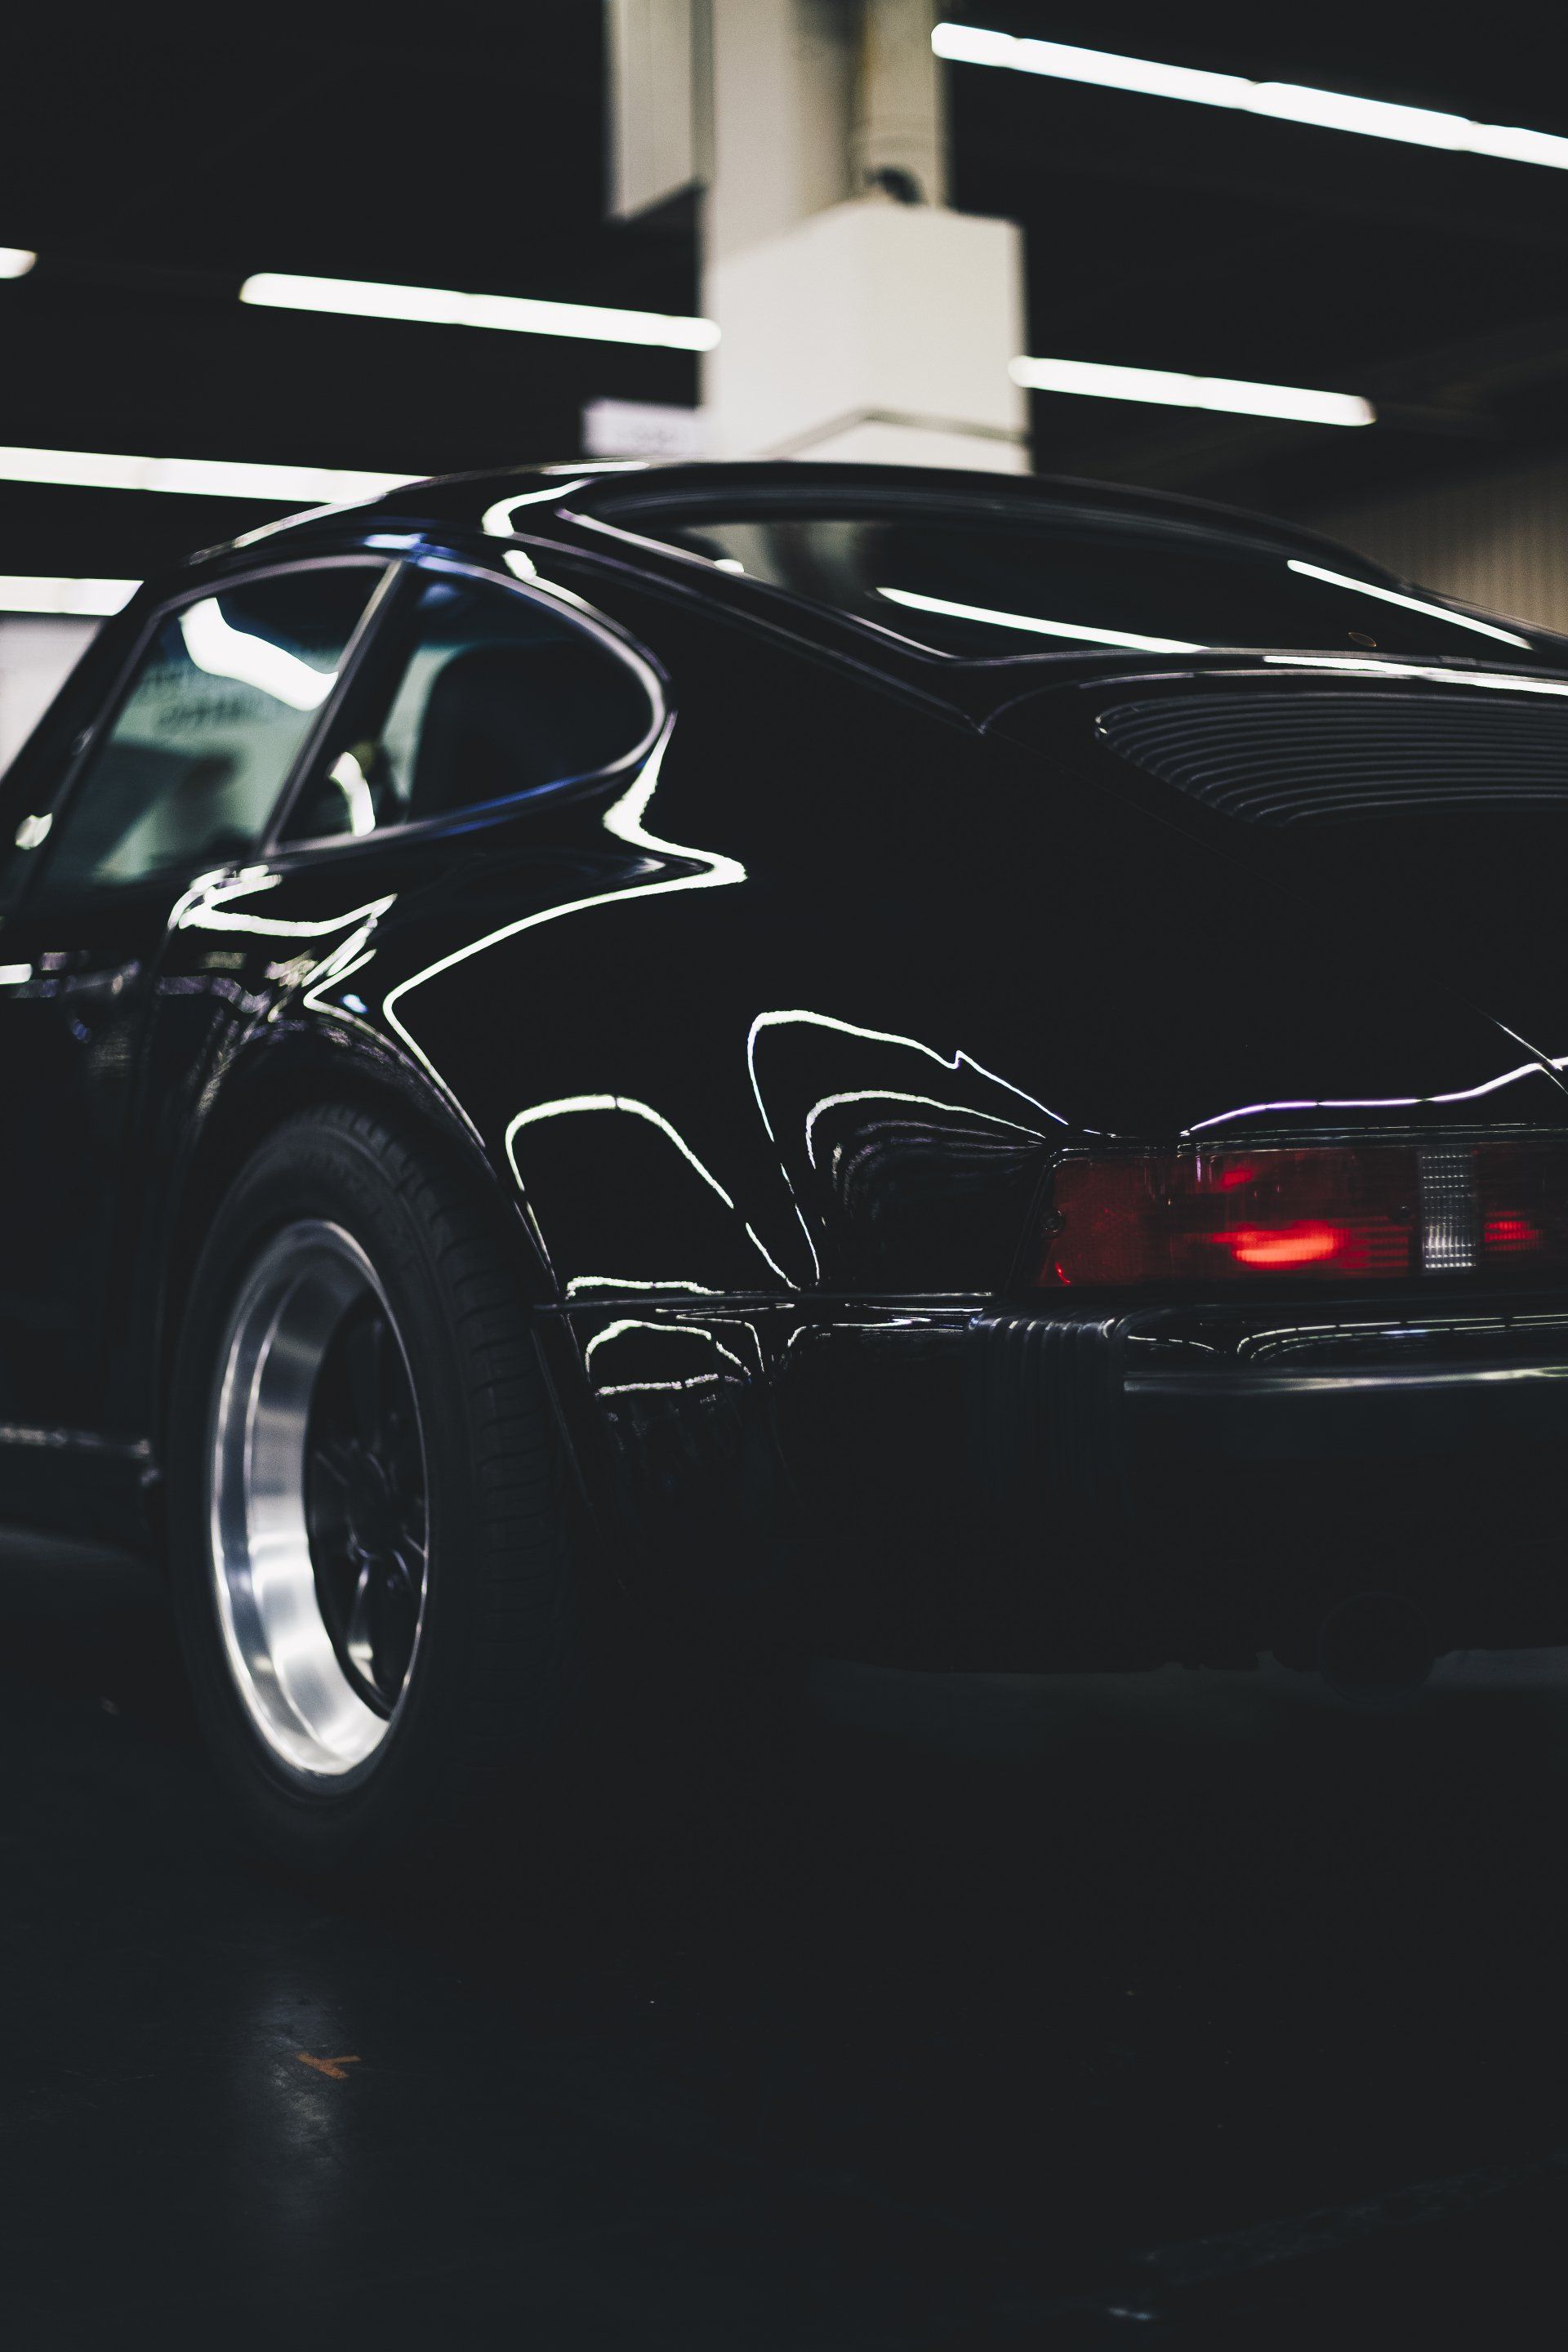 A black sports car is parked in a dark garage